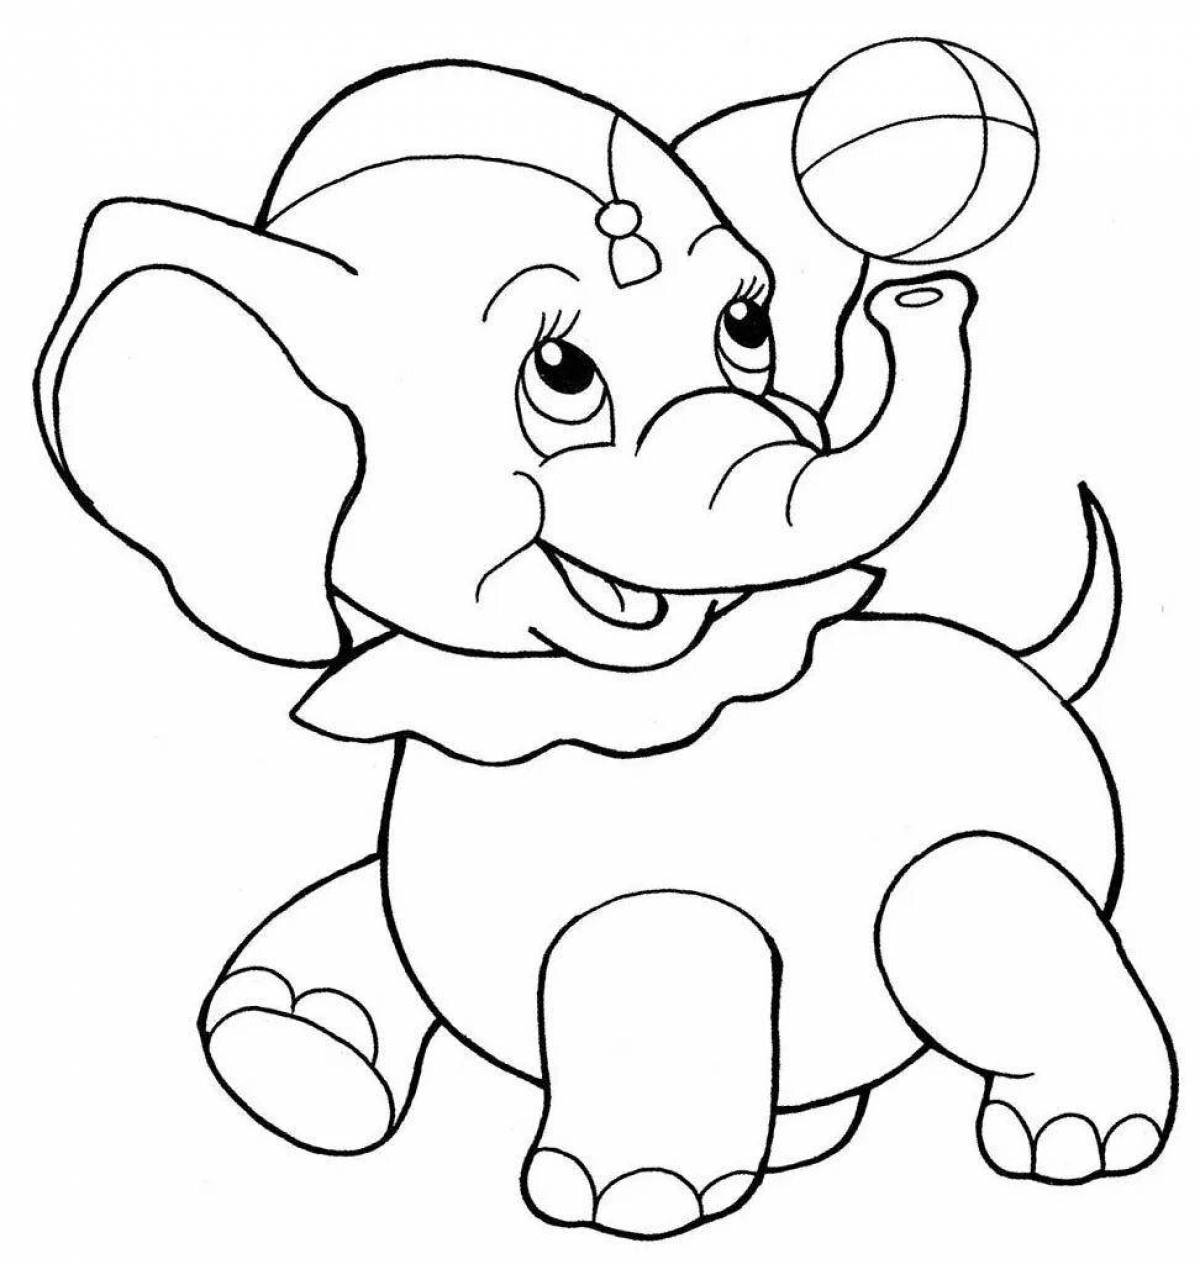 Красивая страница раскраски слонов для детей